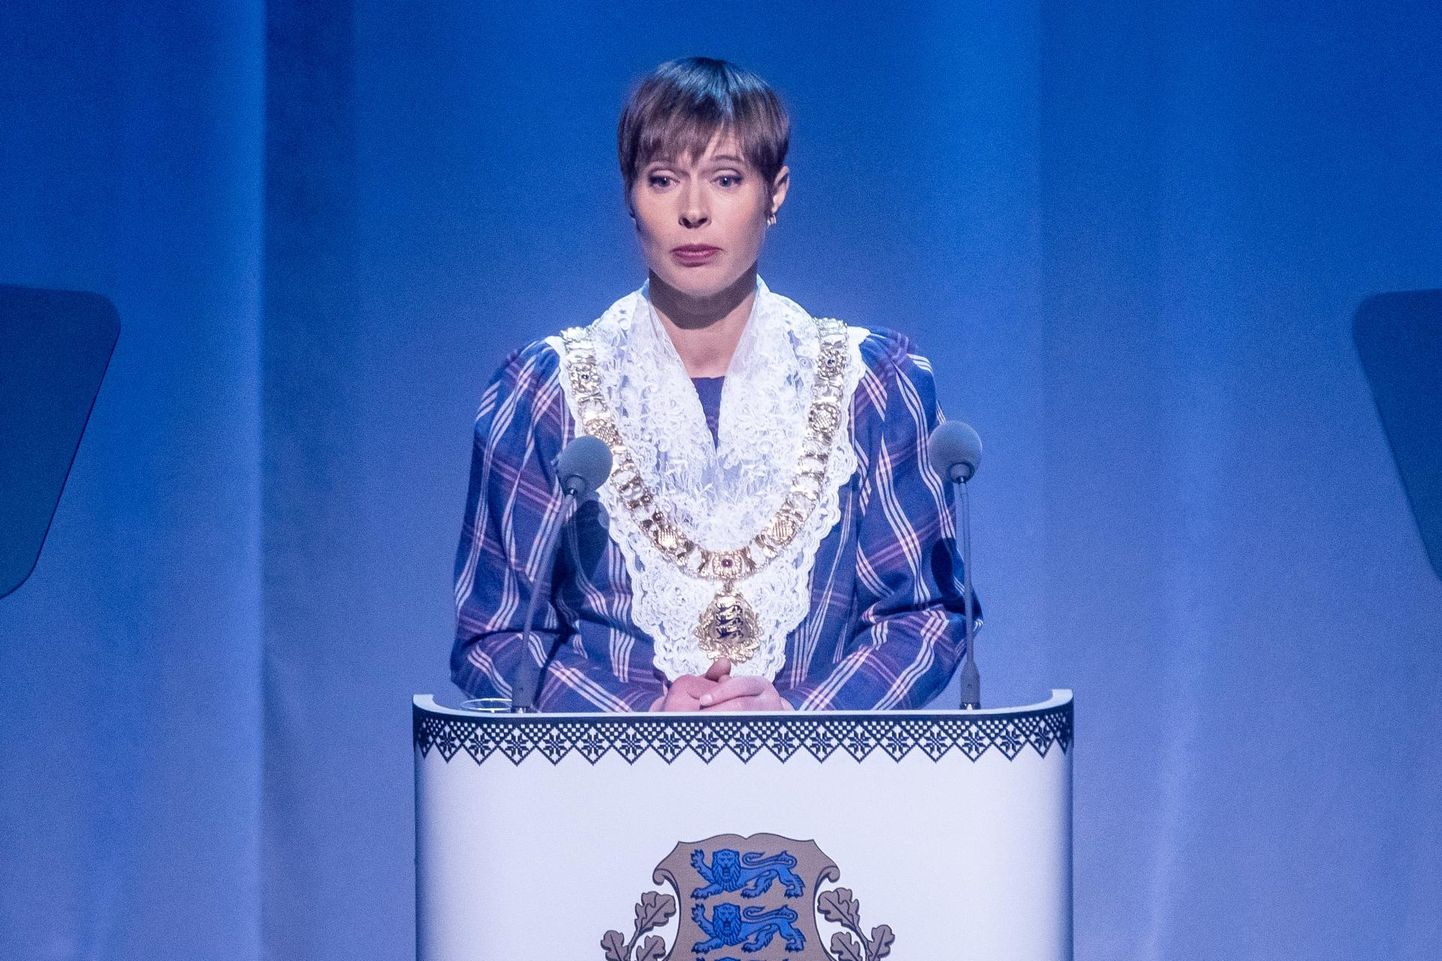 Eesti Vabariigi president Kersti Kaljulaid jõudis aastapäevakõnes puudutada pea kõiki Eesti ühiskonna aktuaalsemaid probleeme.